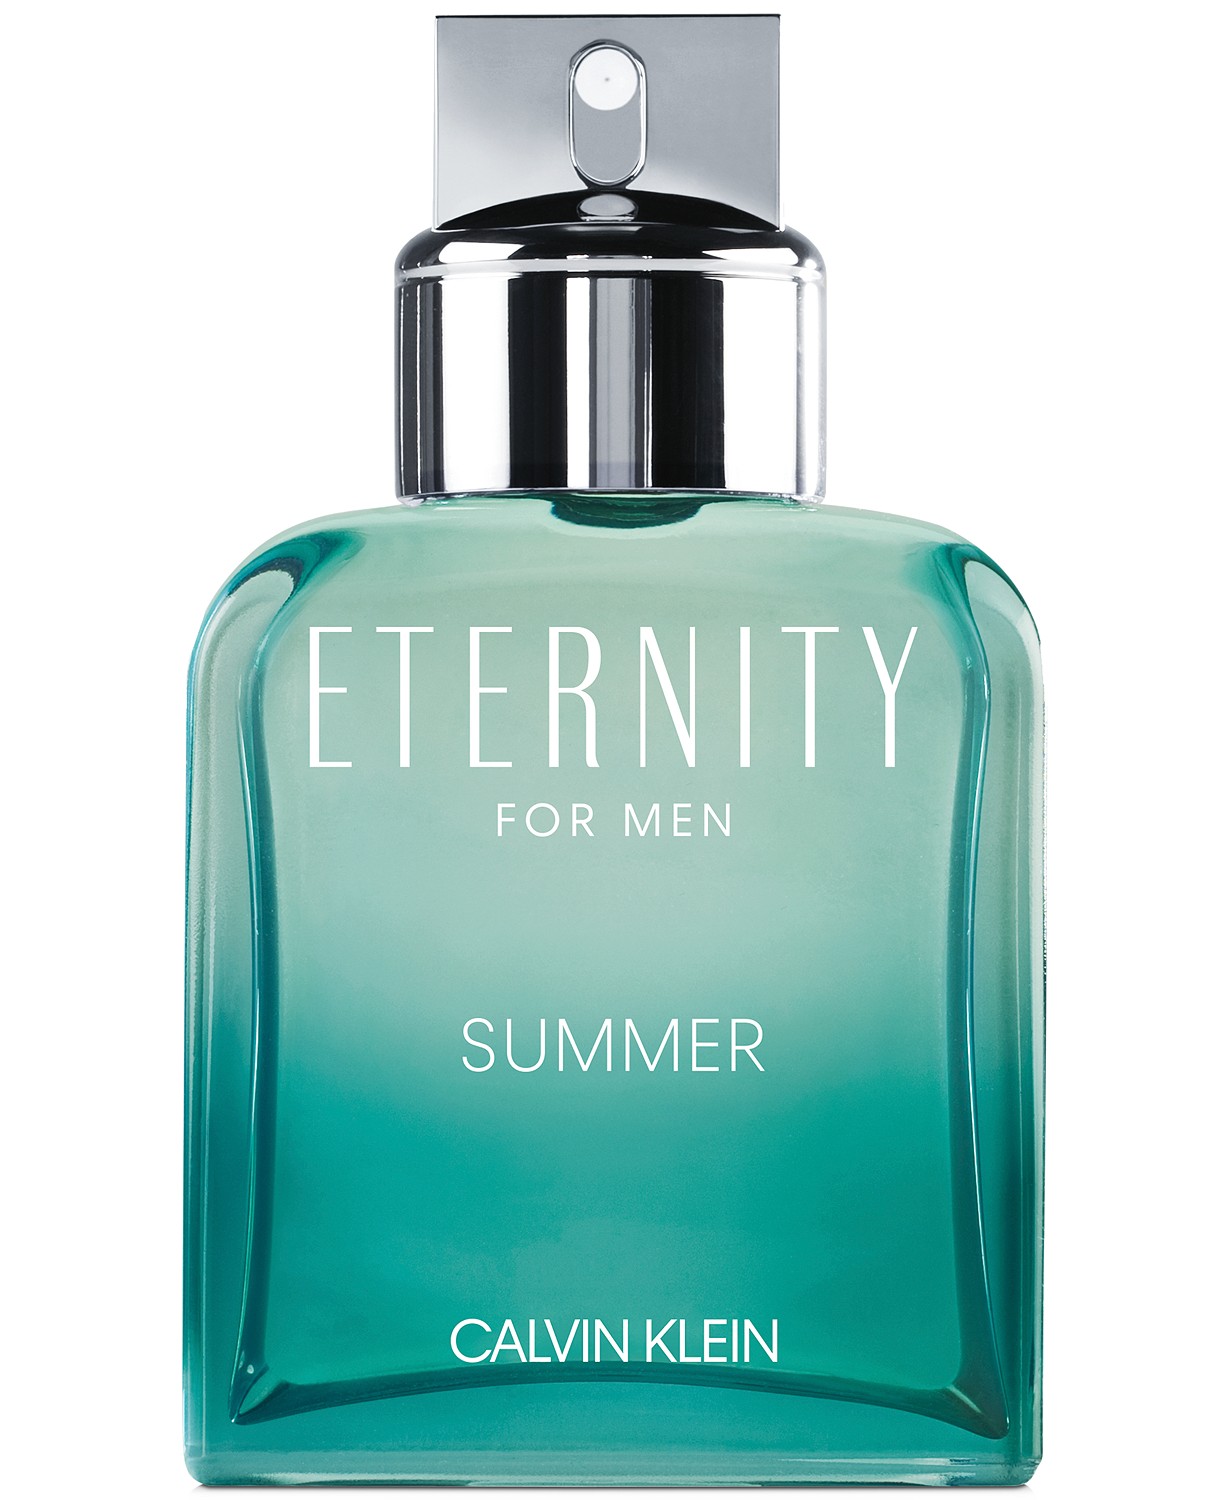 Eternity For Men Summer 2020 Calvin Klein cologne - a fragrance for men ...